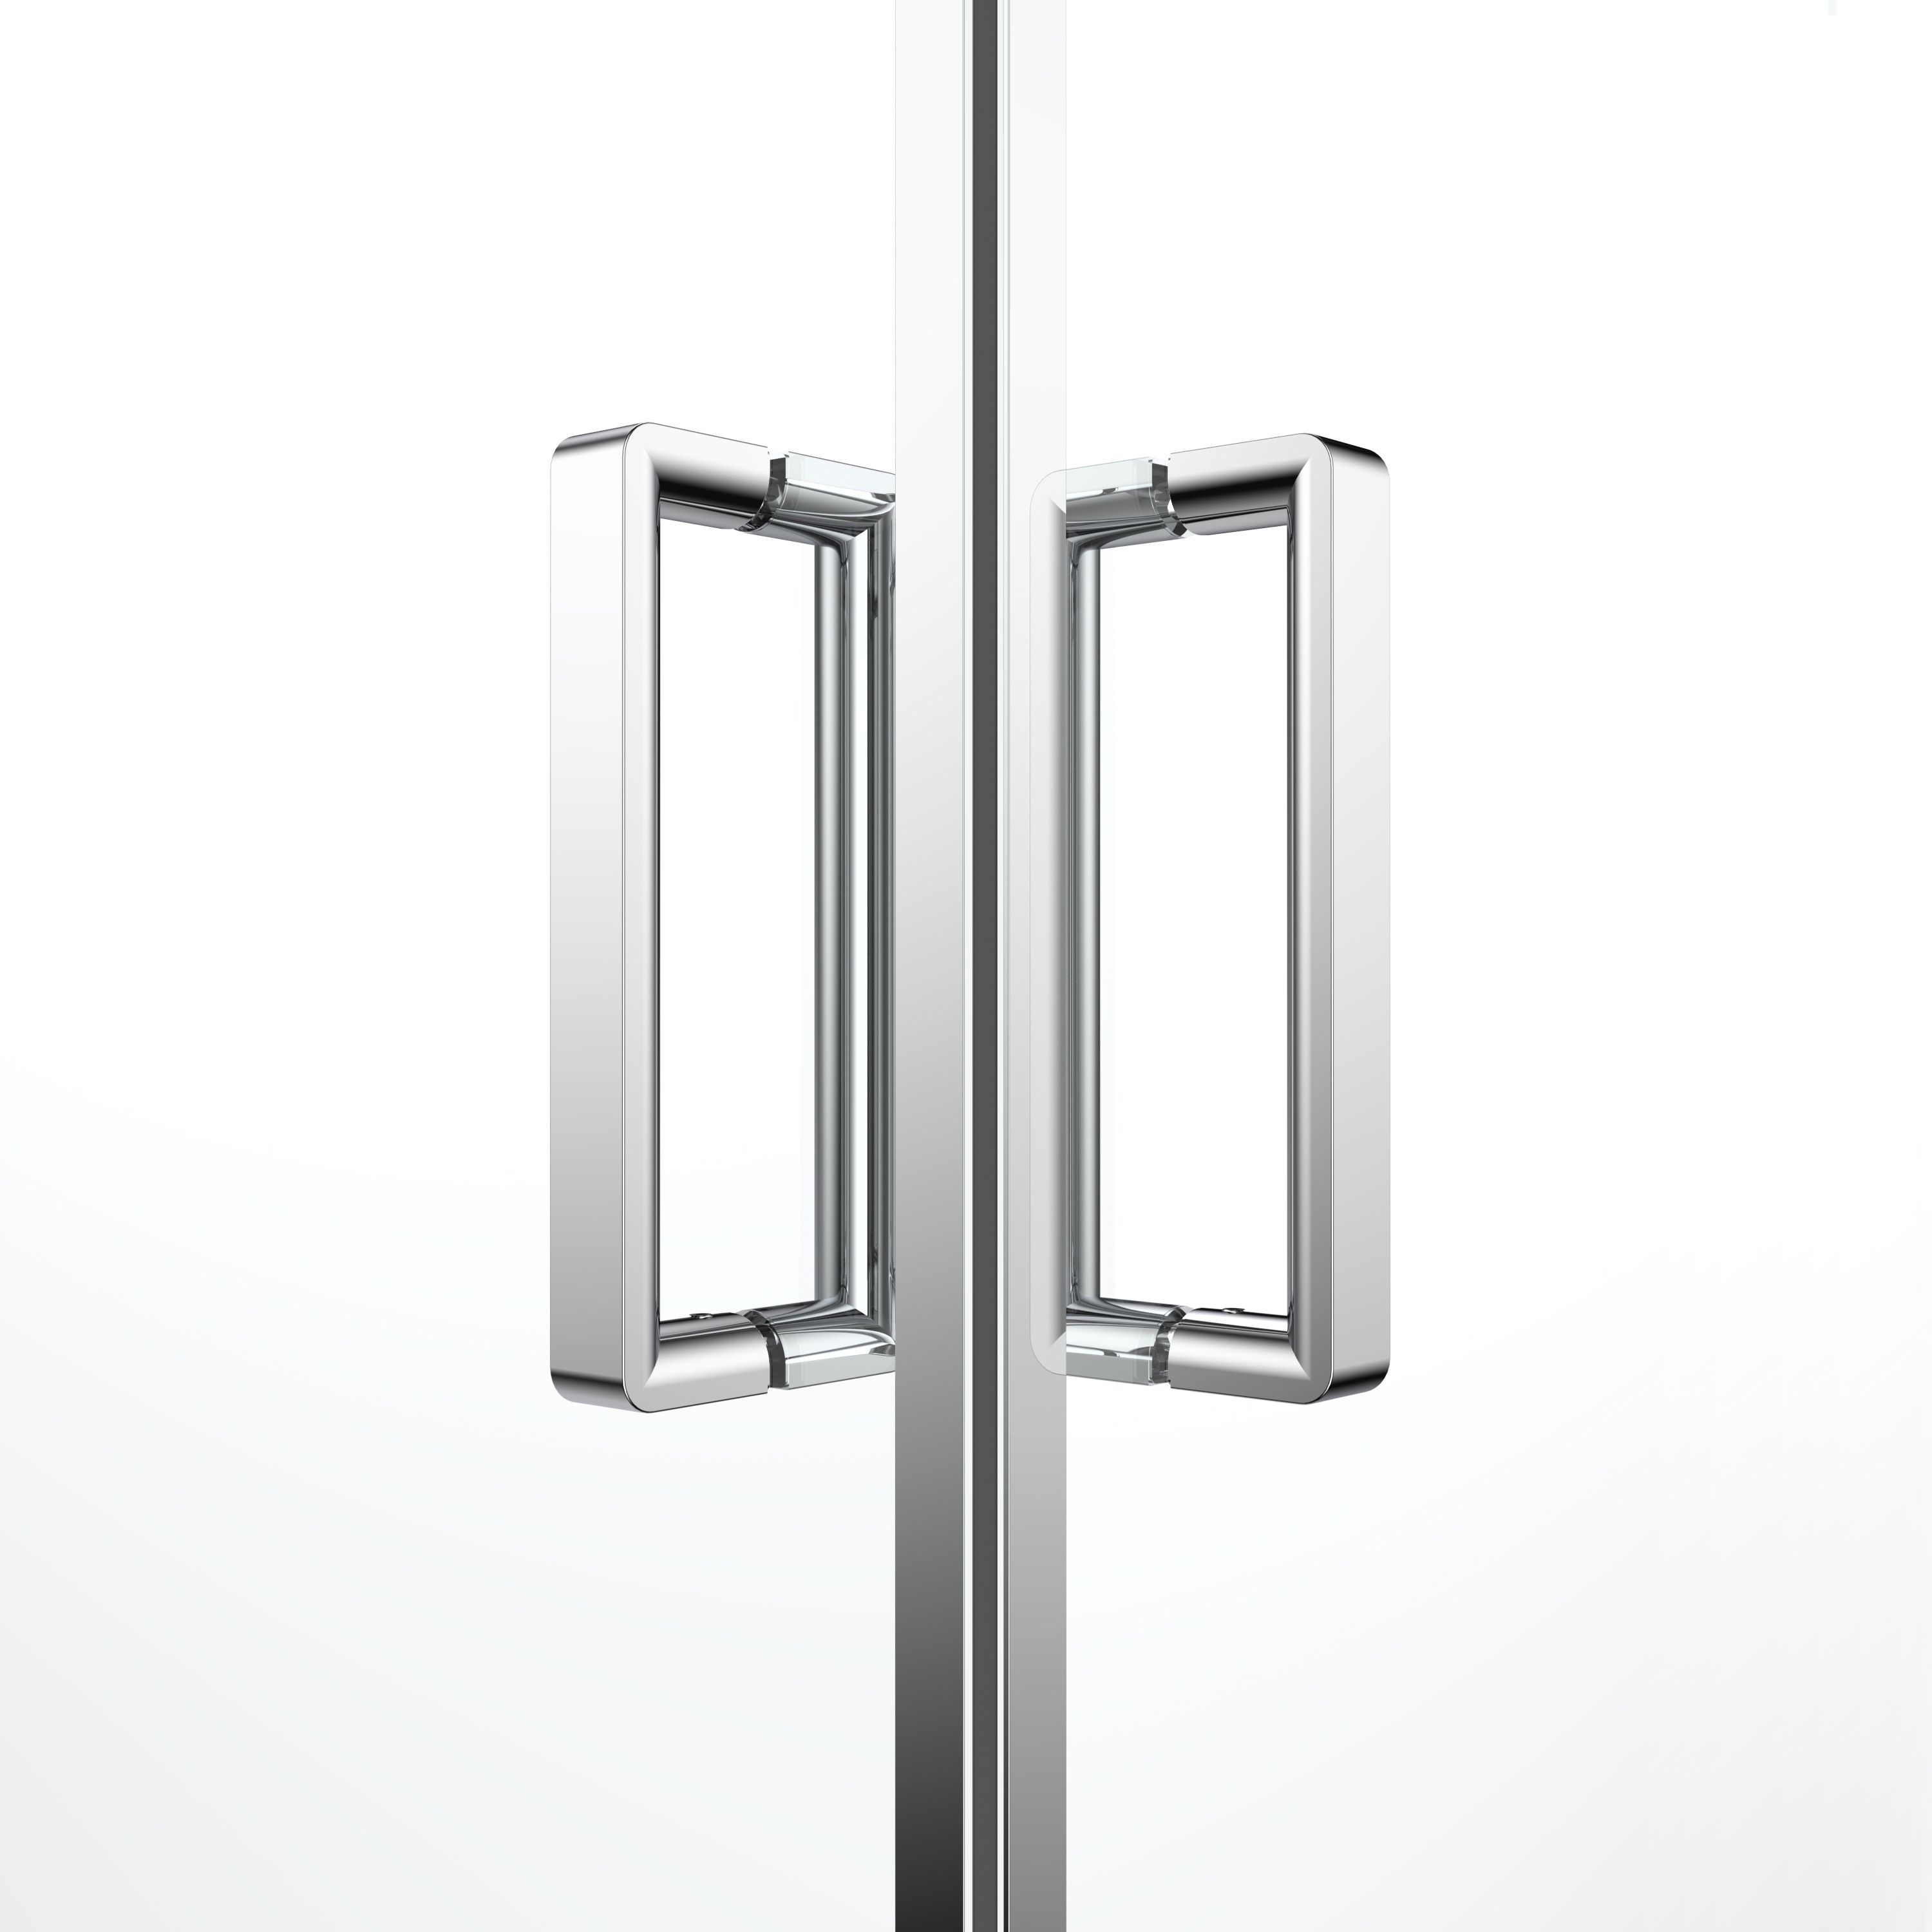 GoodHome Ledava Clear glass Chrome effect Square Shower enclosure - Corner entry double sliding door (W)76cm (D)76cm